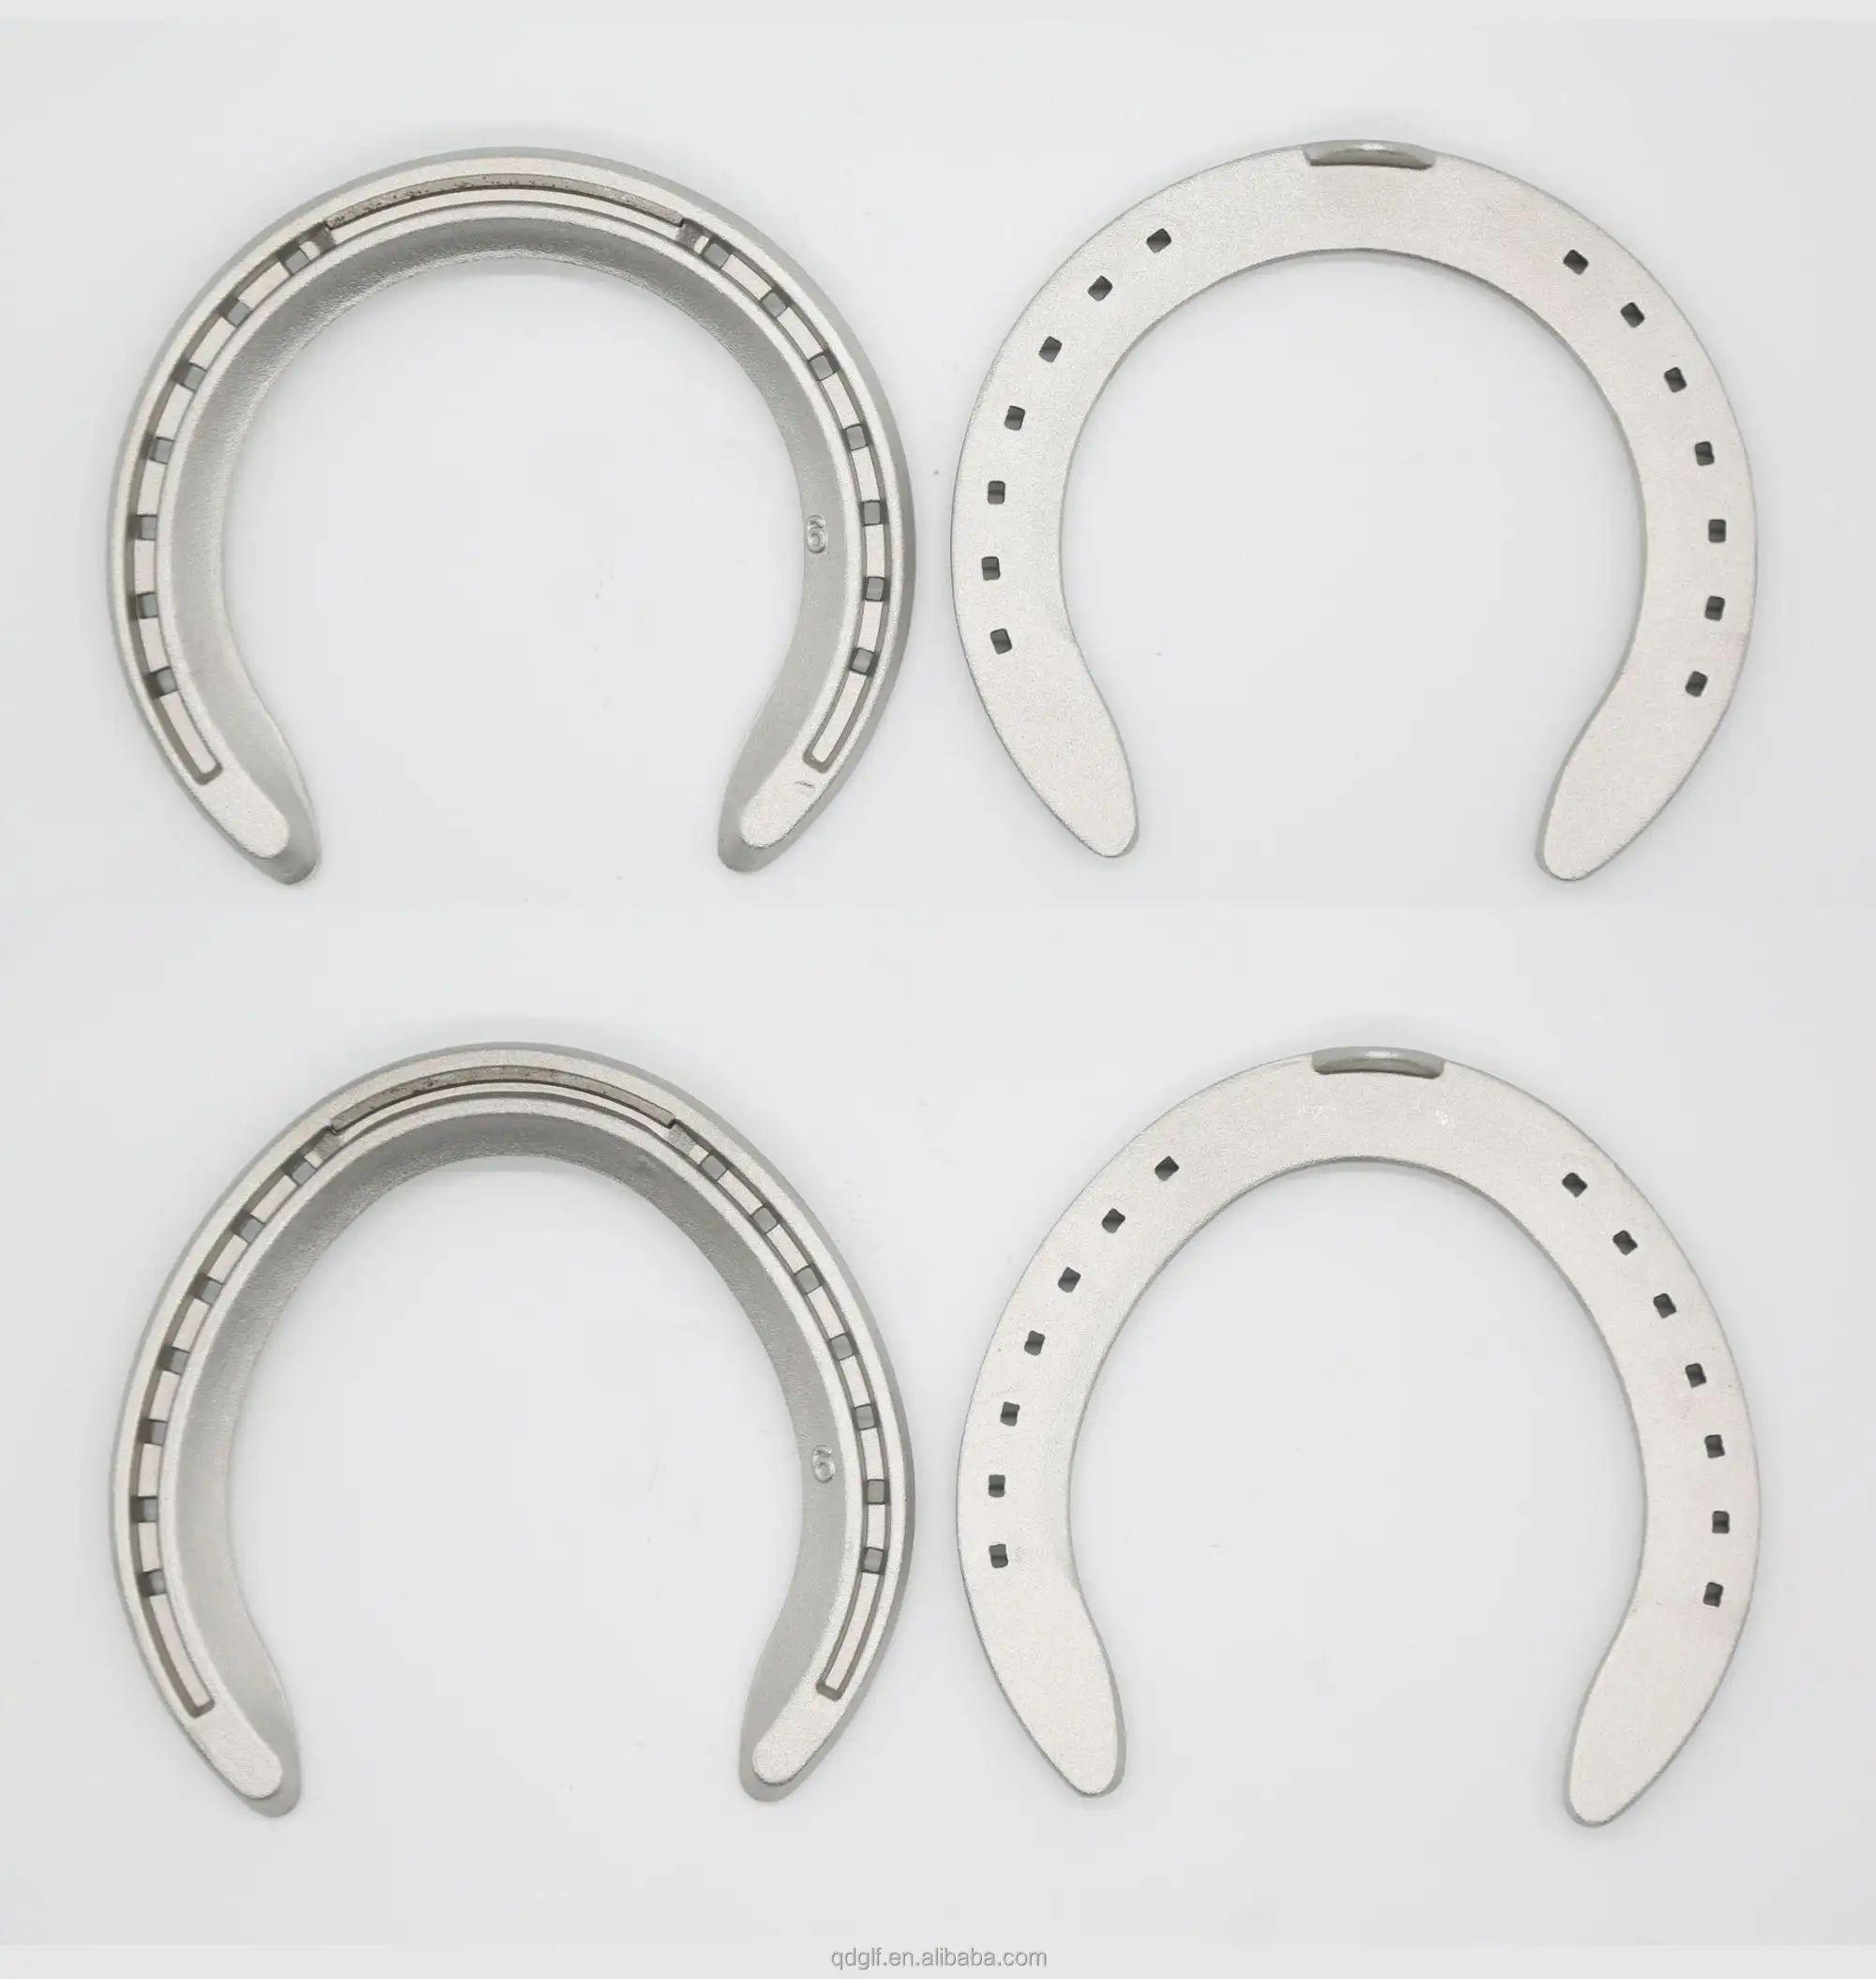 Chinese factory direct selling wholesale iron horseshoe